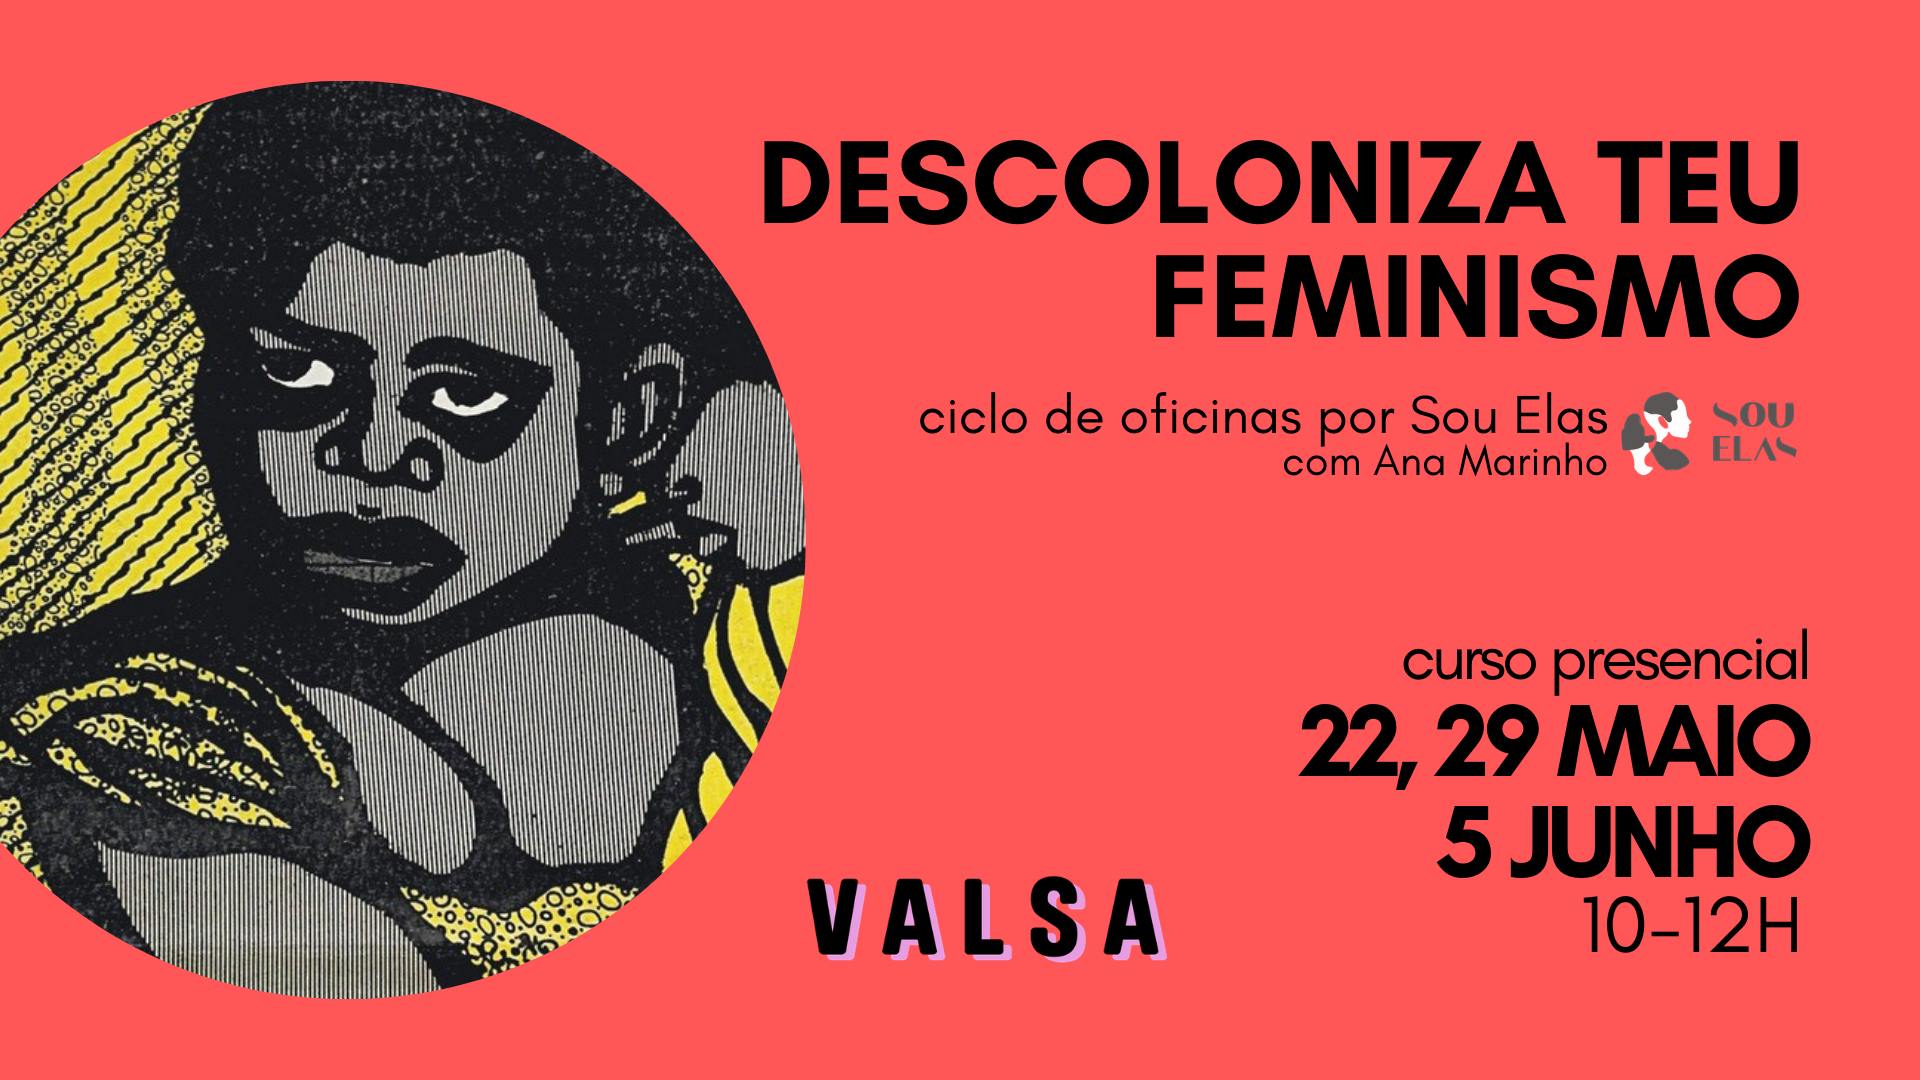 DESCOLONIZE TEU FEMINISMO | ciclo de oficinas por Sou Elas com Ana Marinho